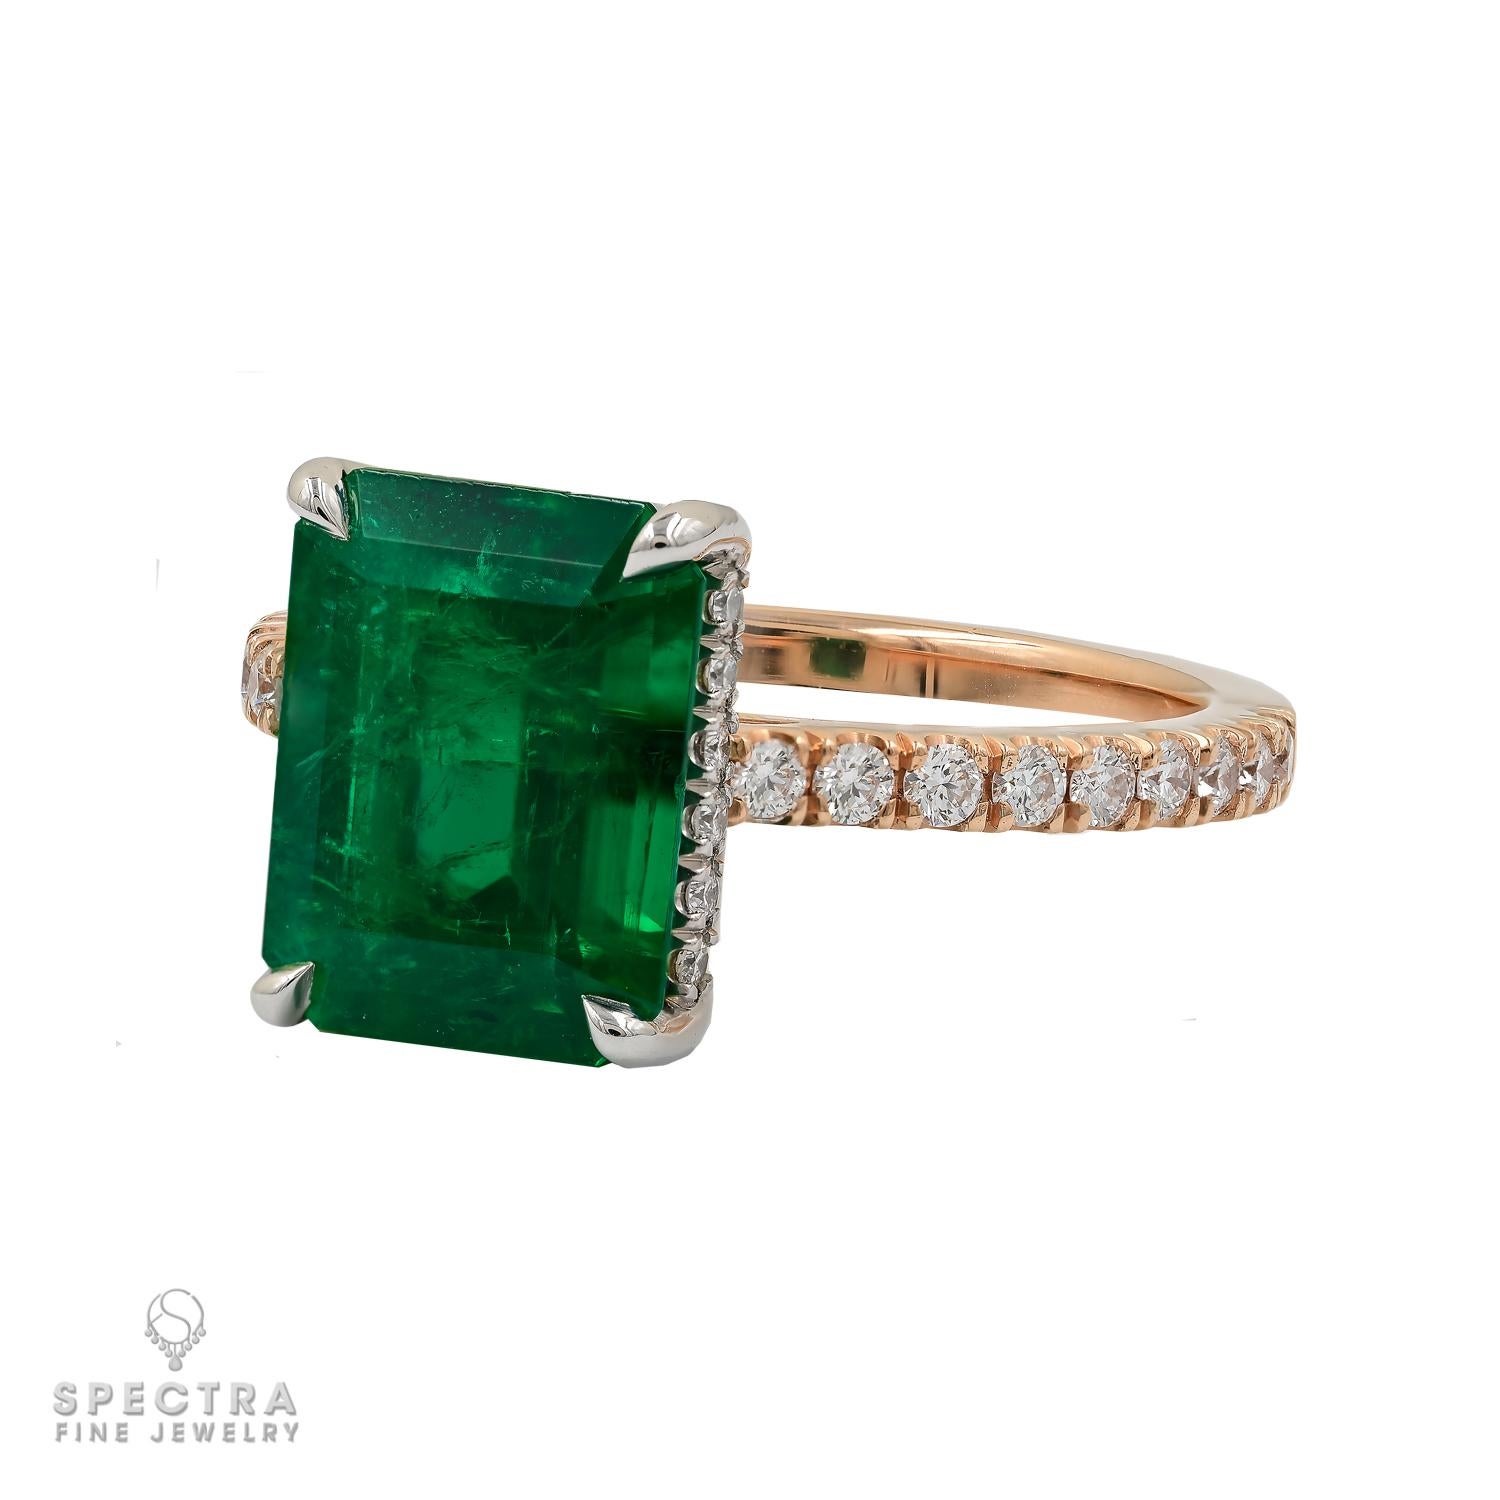 Wir präsentieren den Himalaya-Smaragd-Diamantring, ein atemberaubendes Schmuckstück, das sich sowohl als Cocktail- als auch als Verlobungsring eignet. 
Sein Herzstück ist ein bezaubernder Himalaya-Smaragd von 3,22 Karat im Smaragdschliff, der von